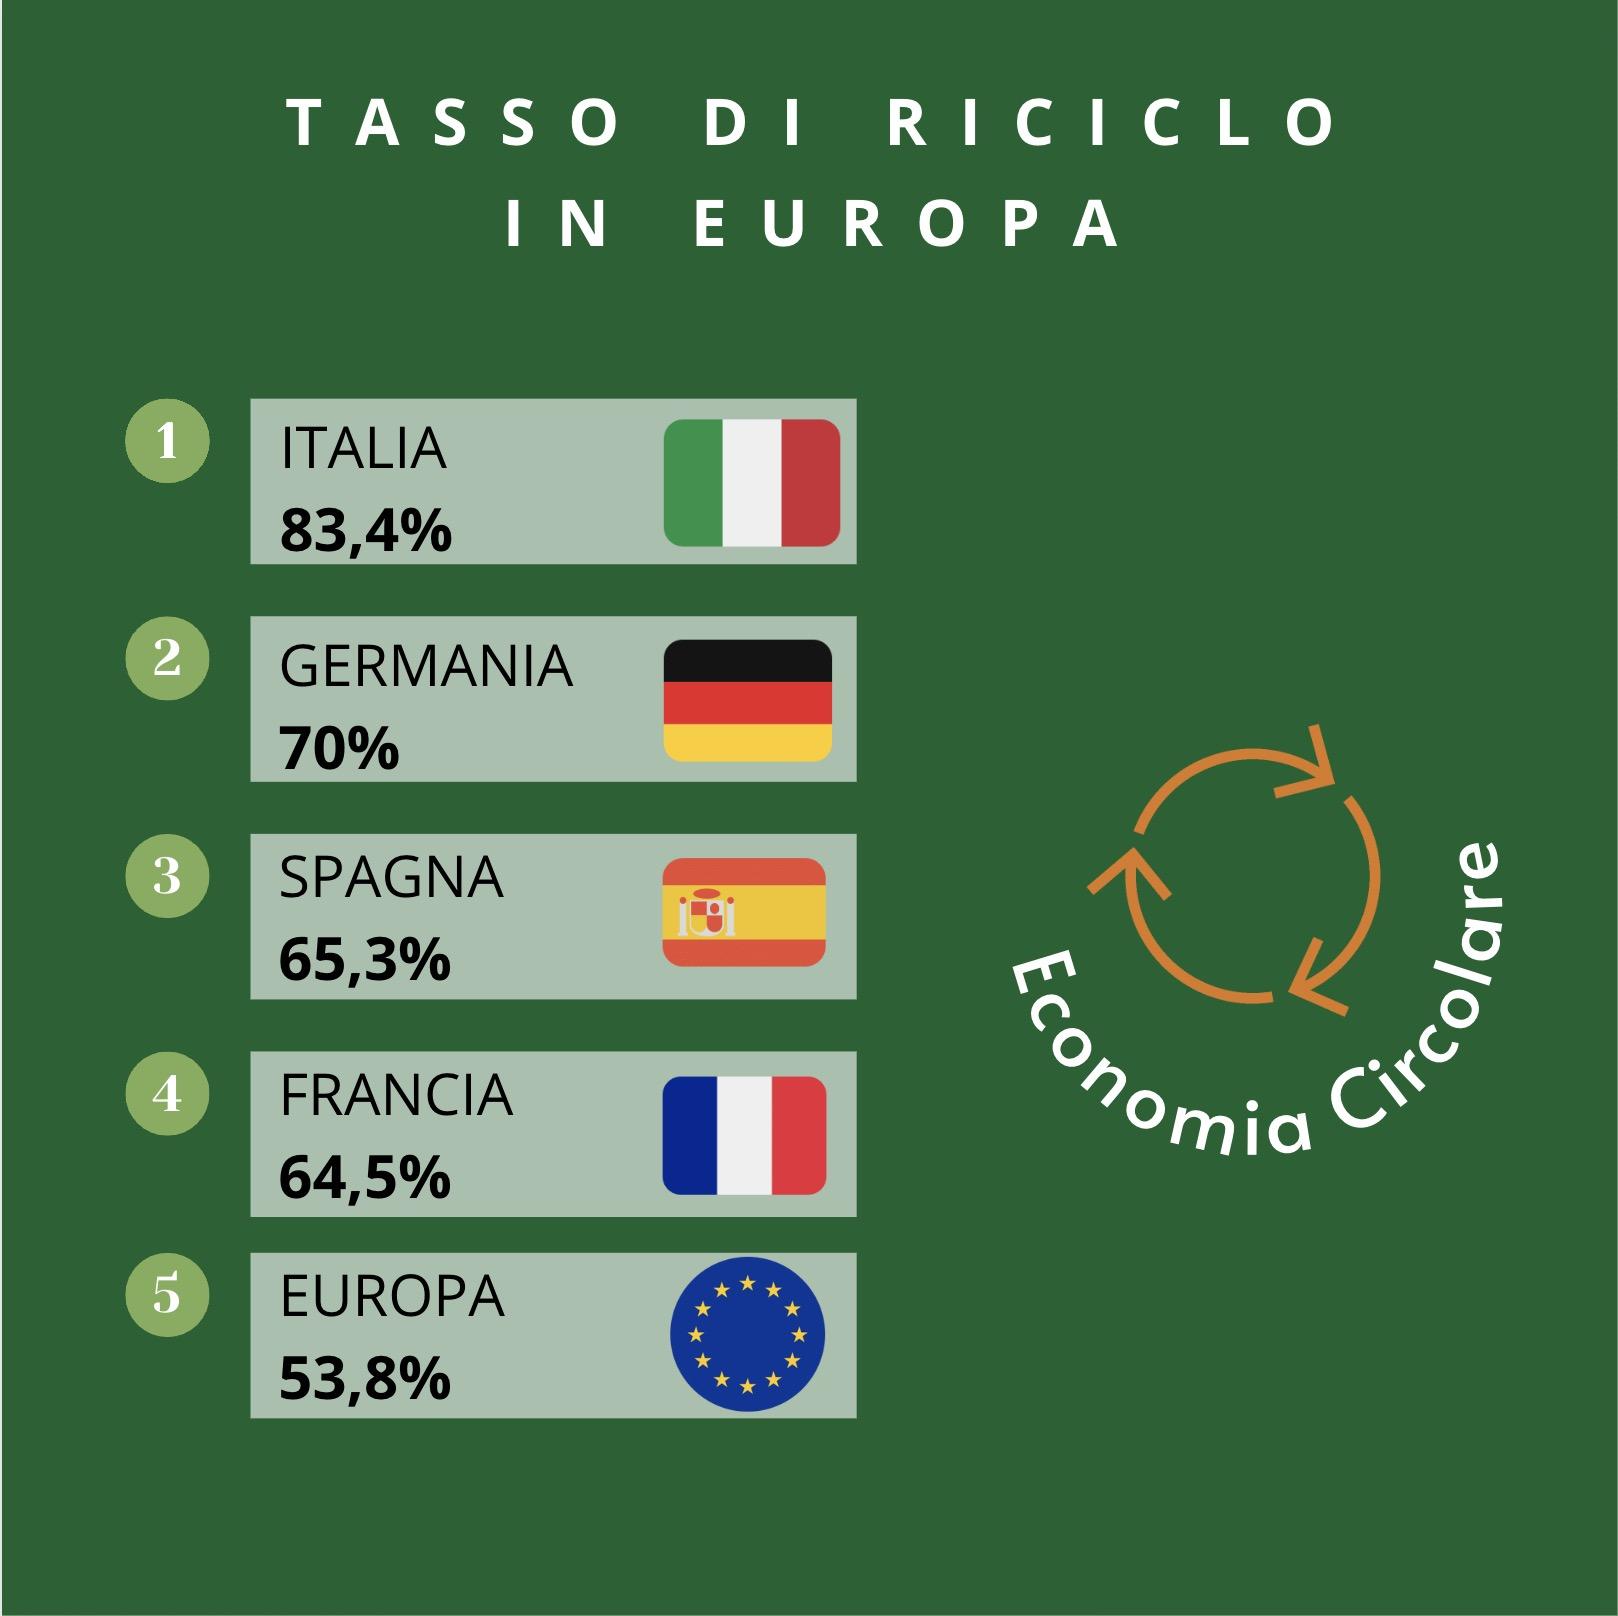 Il settore dell’economia circolare in Italia è trainato dall’industria del riciclo